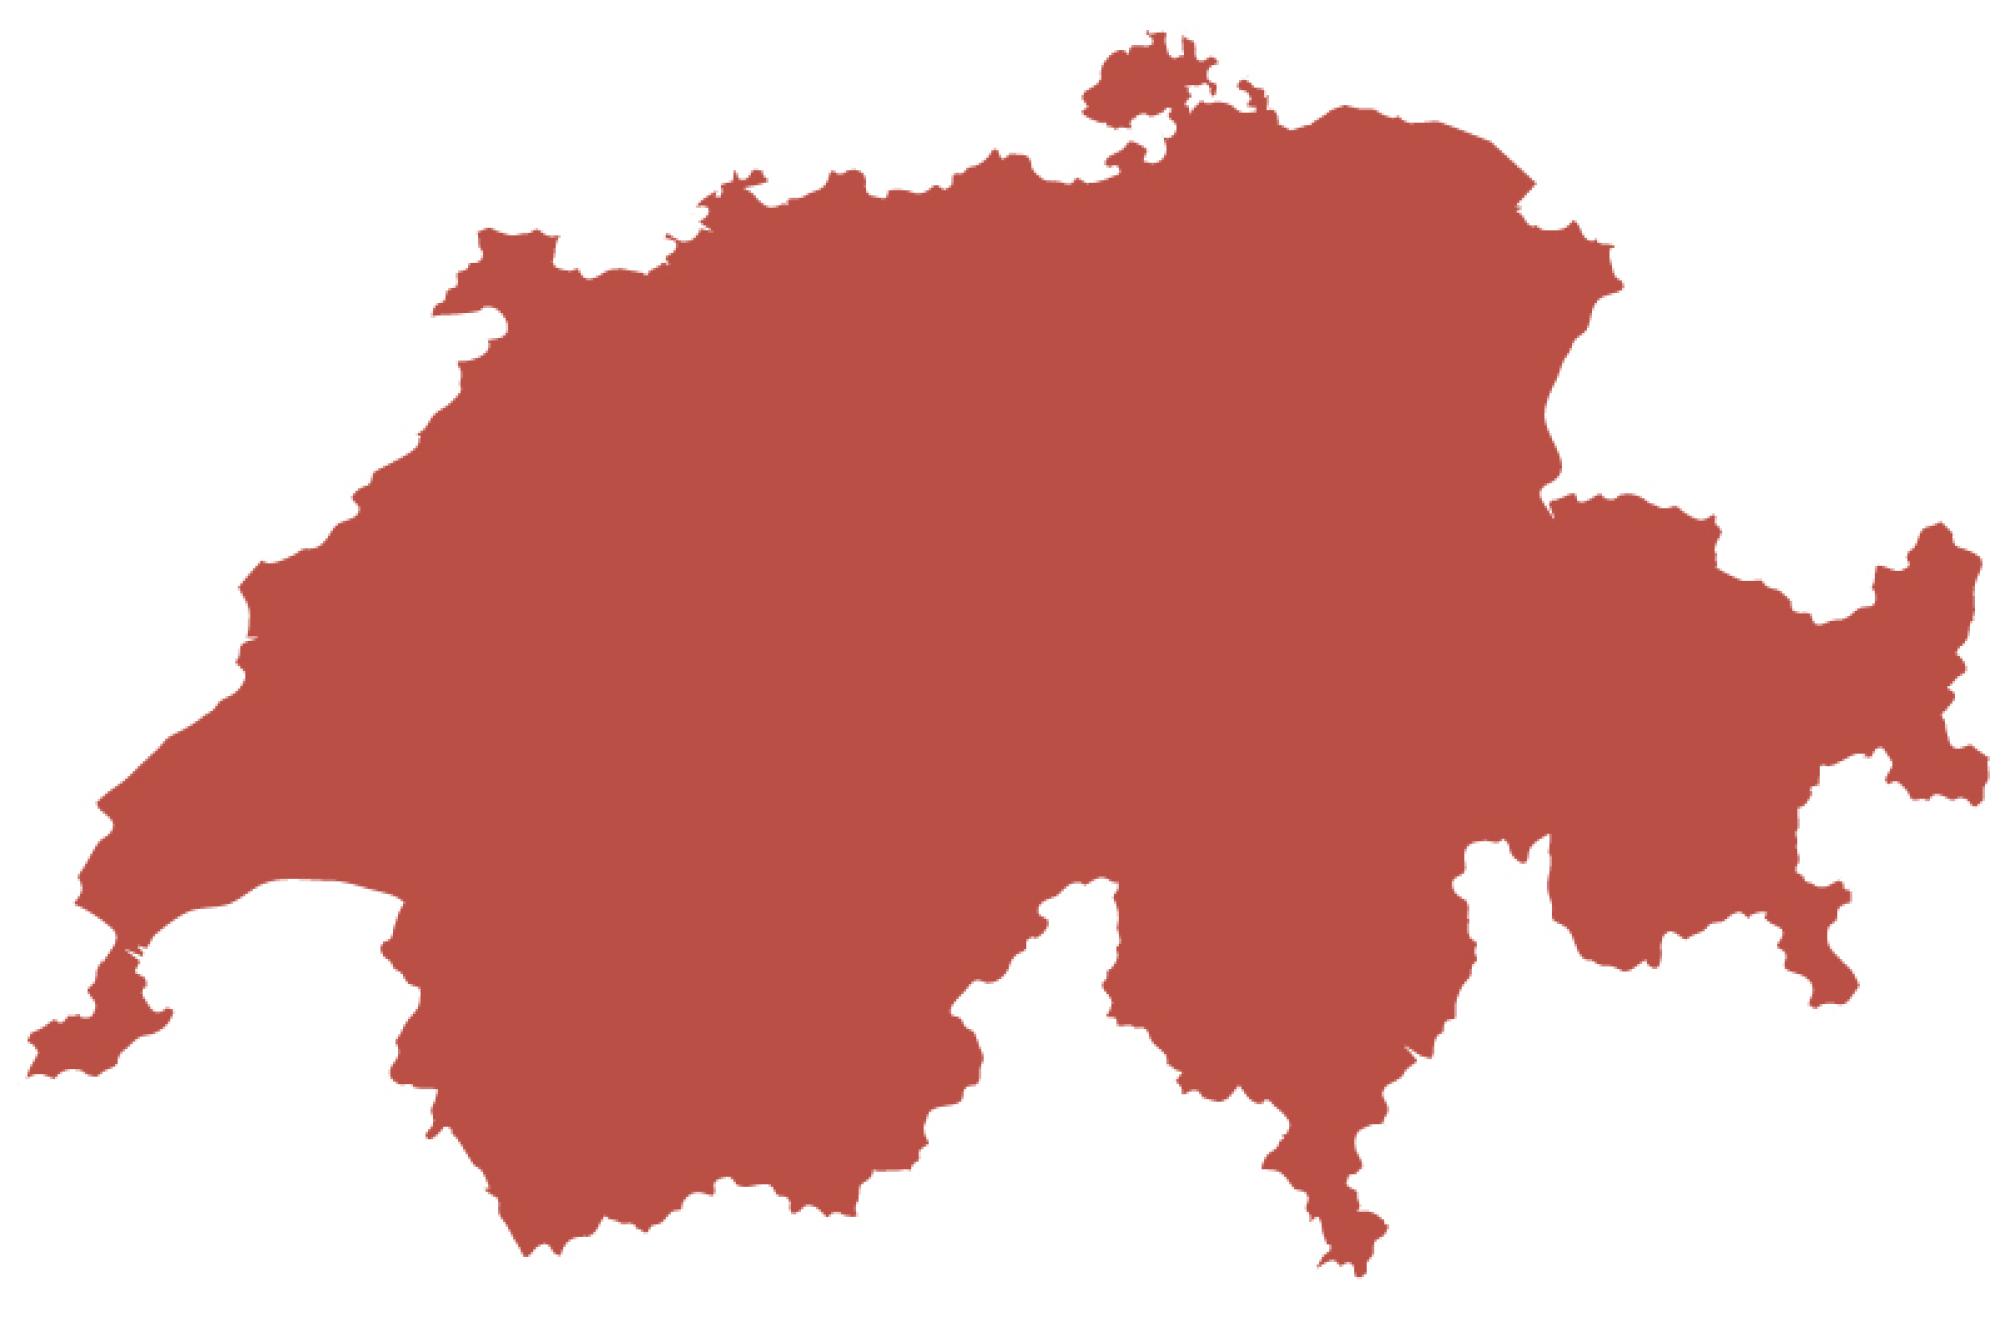 Cartina della Svizzera in tre varianti: la prima cartina mostra i soli confini della Svizzera.